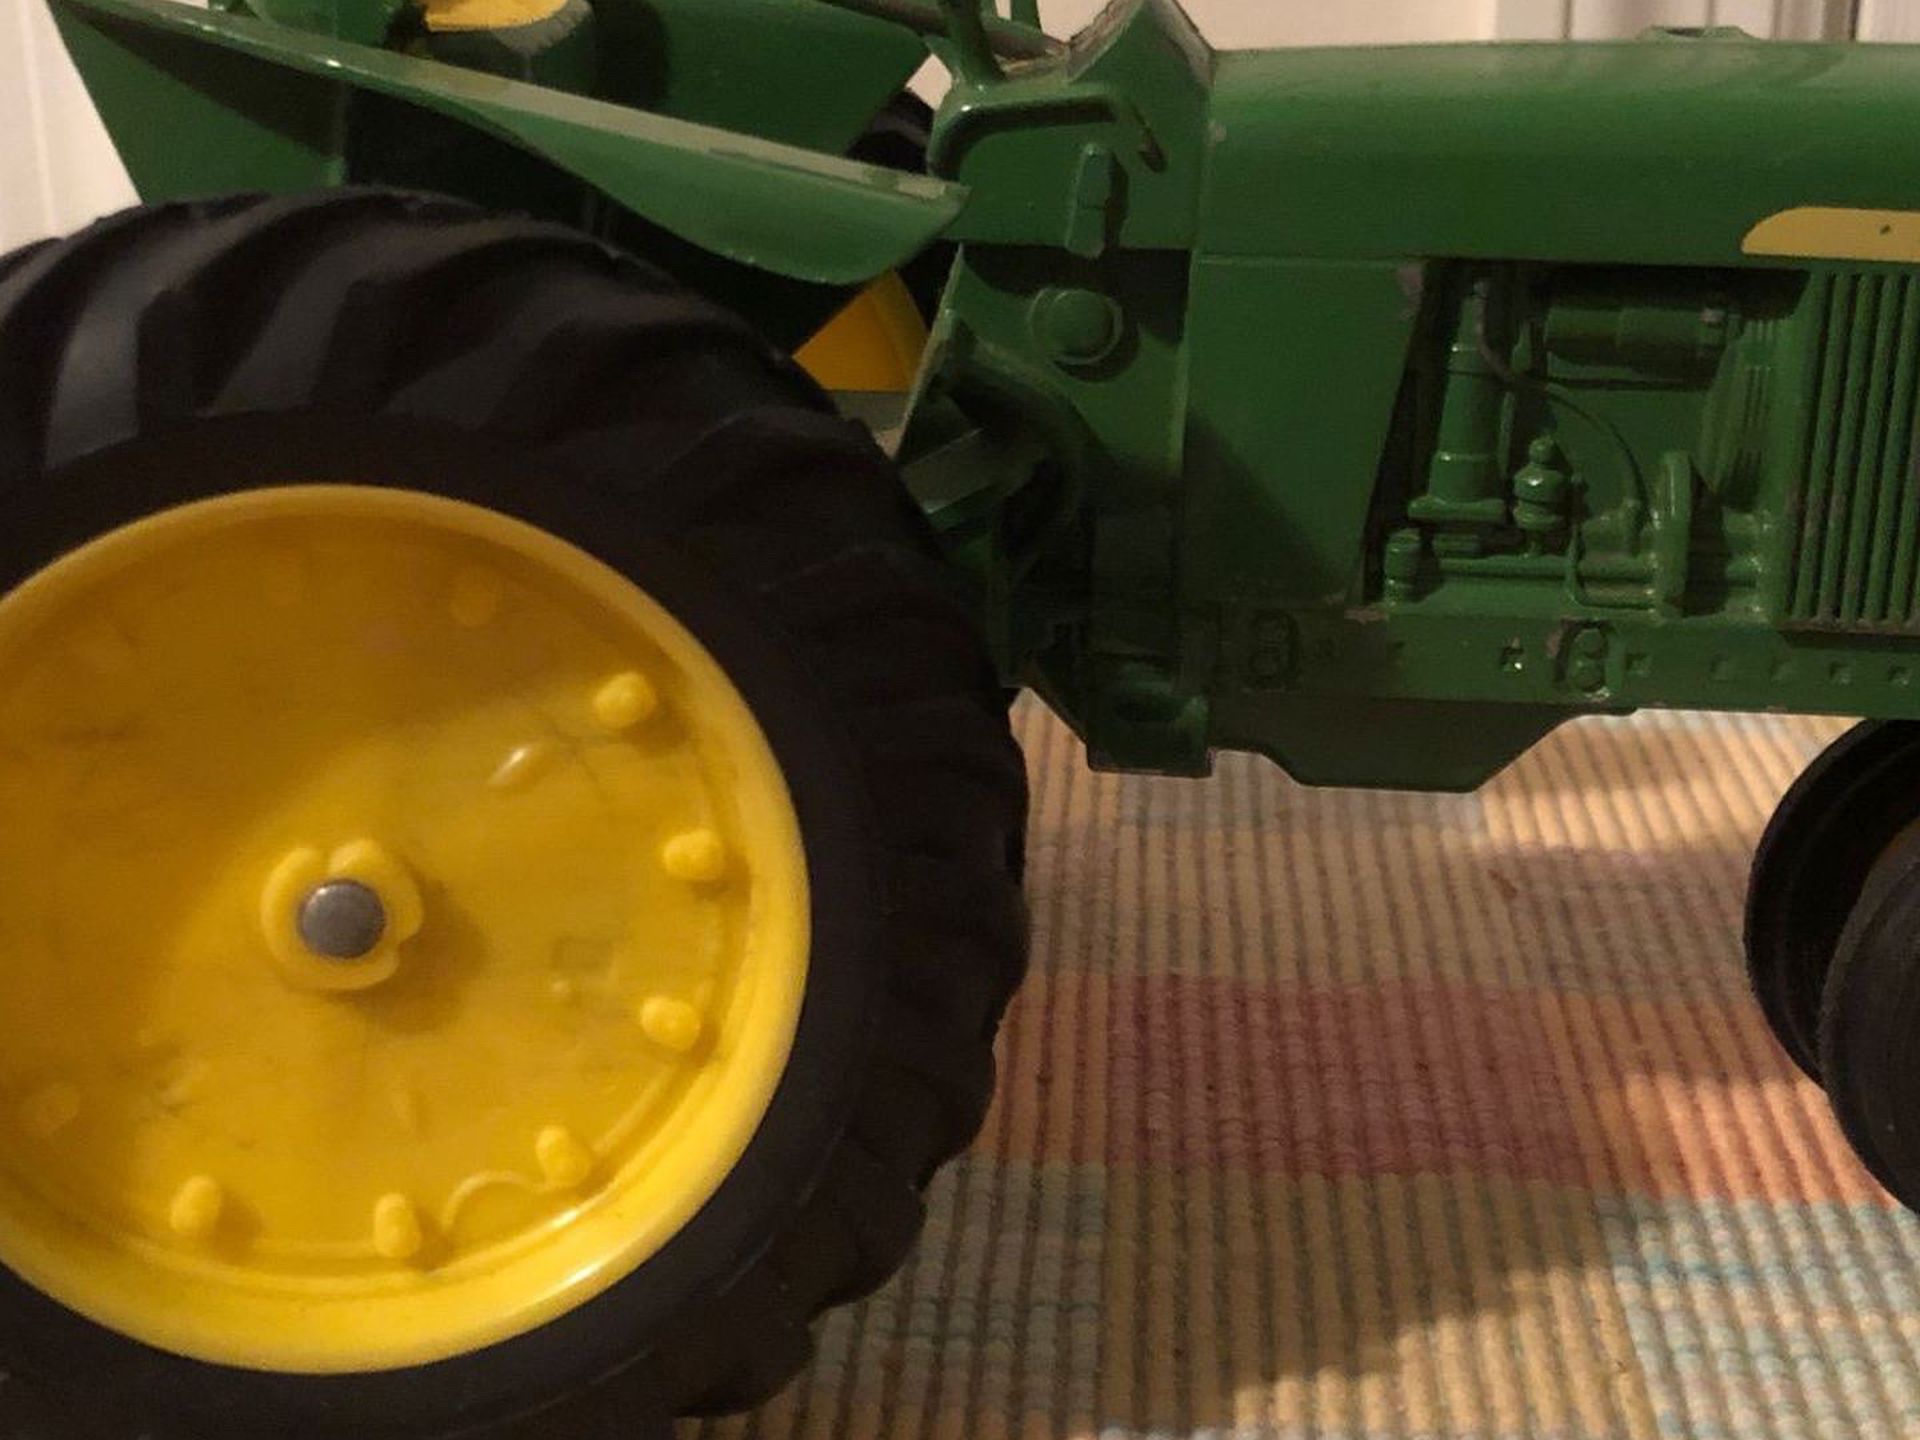 Toy John Deere Farm Tractor